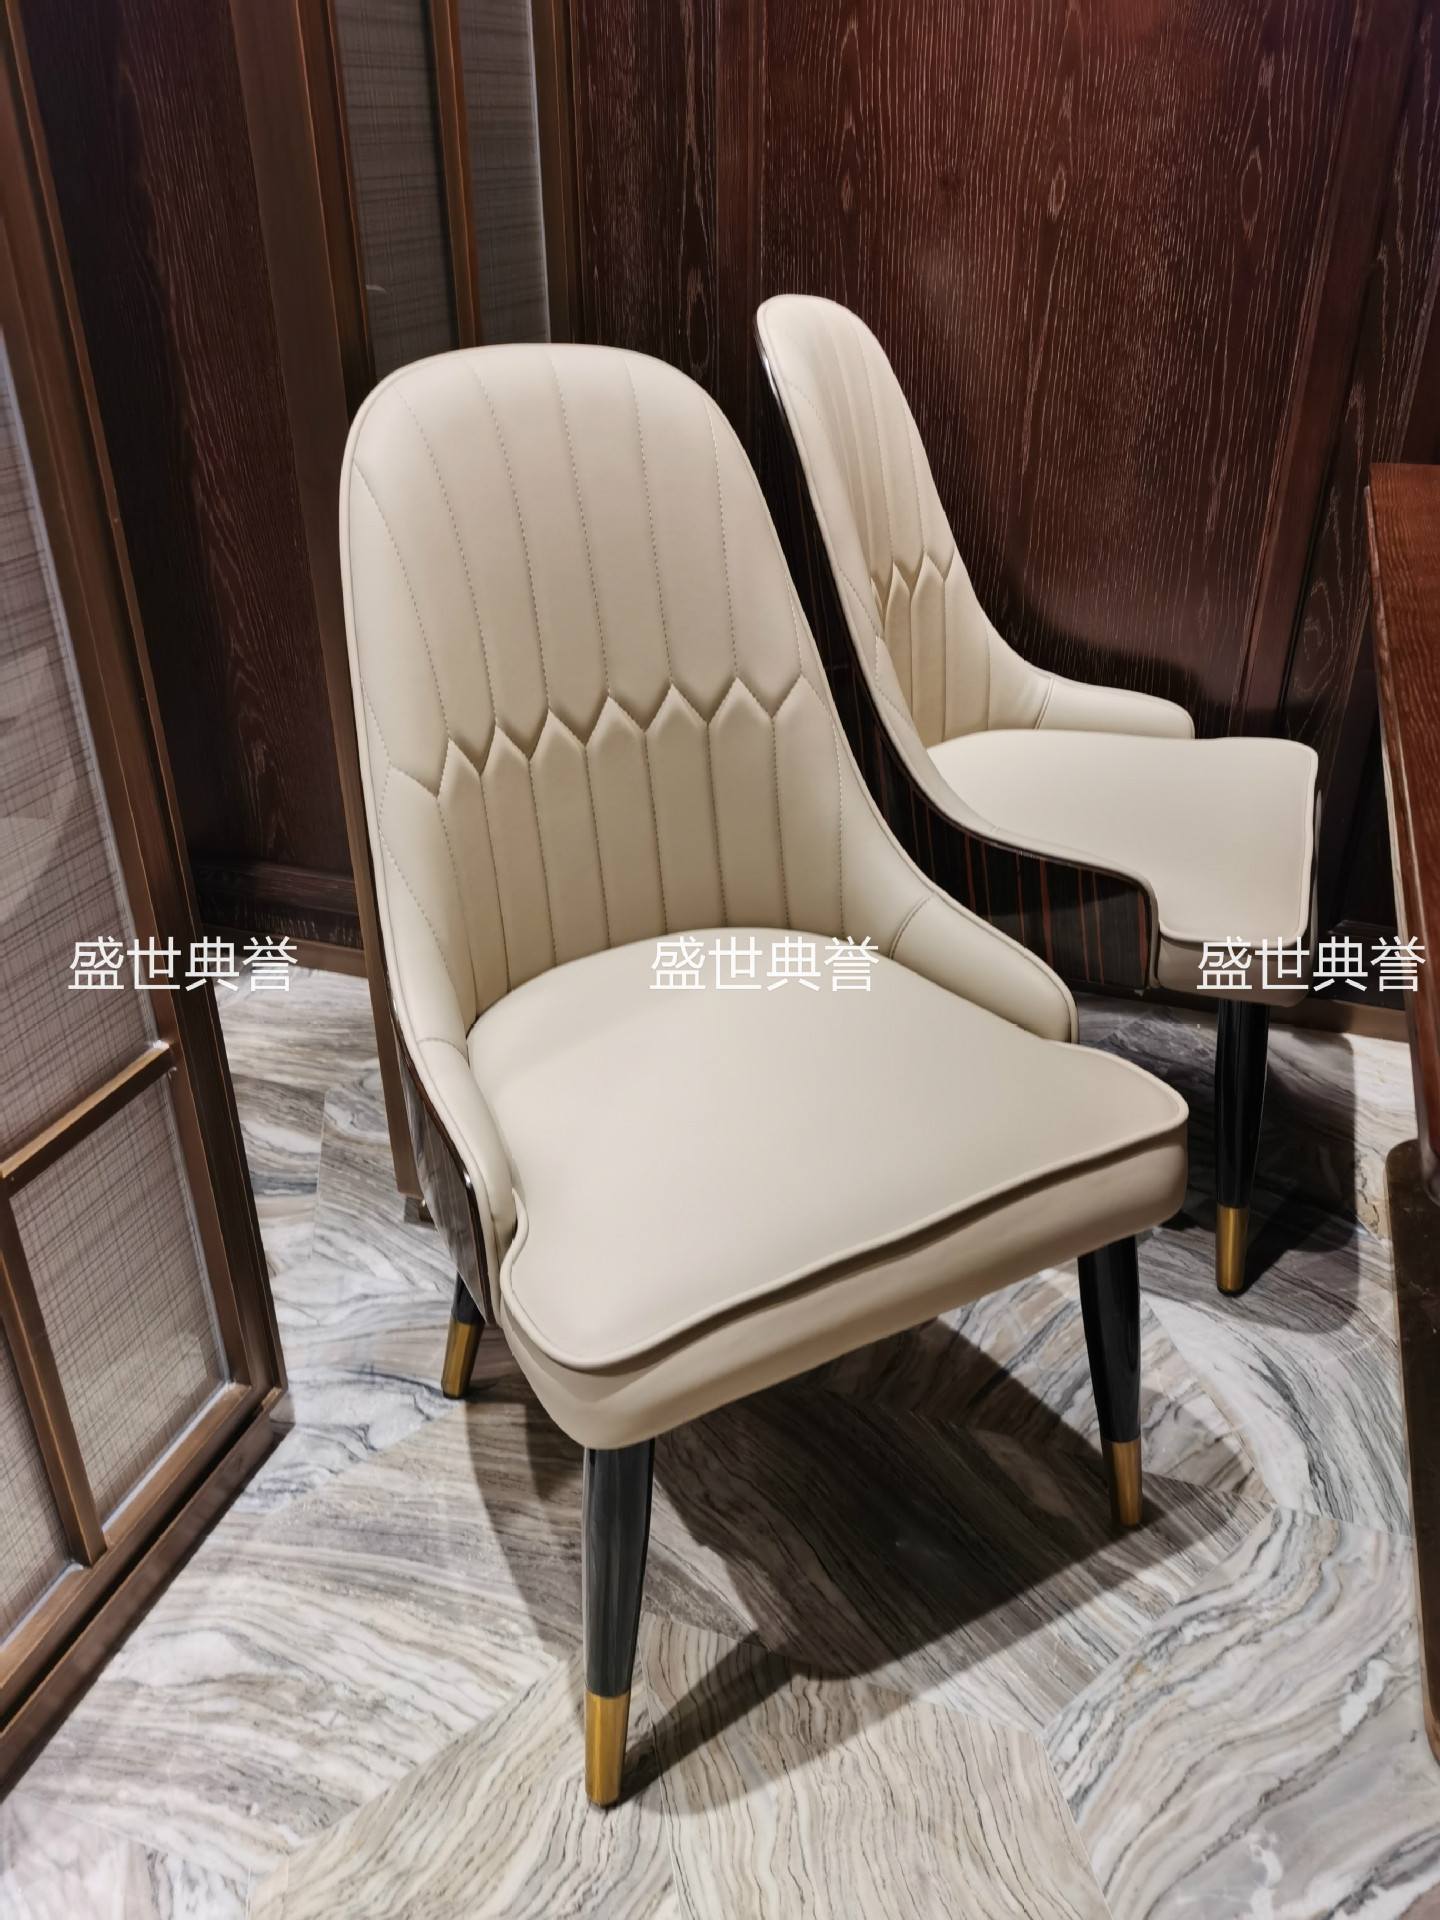 上海度假酒店西餐桌椅海鲜餐厅轻奢实木椅饭店自助餐厅实木餐桌椅详情1